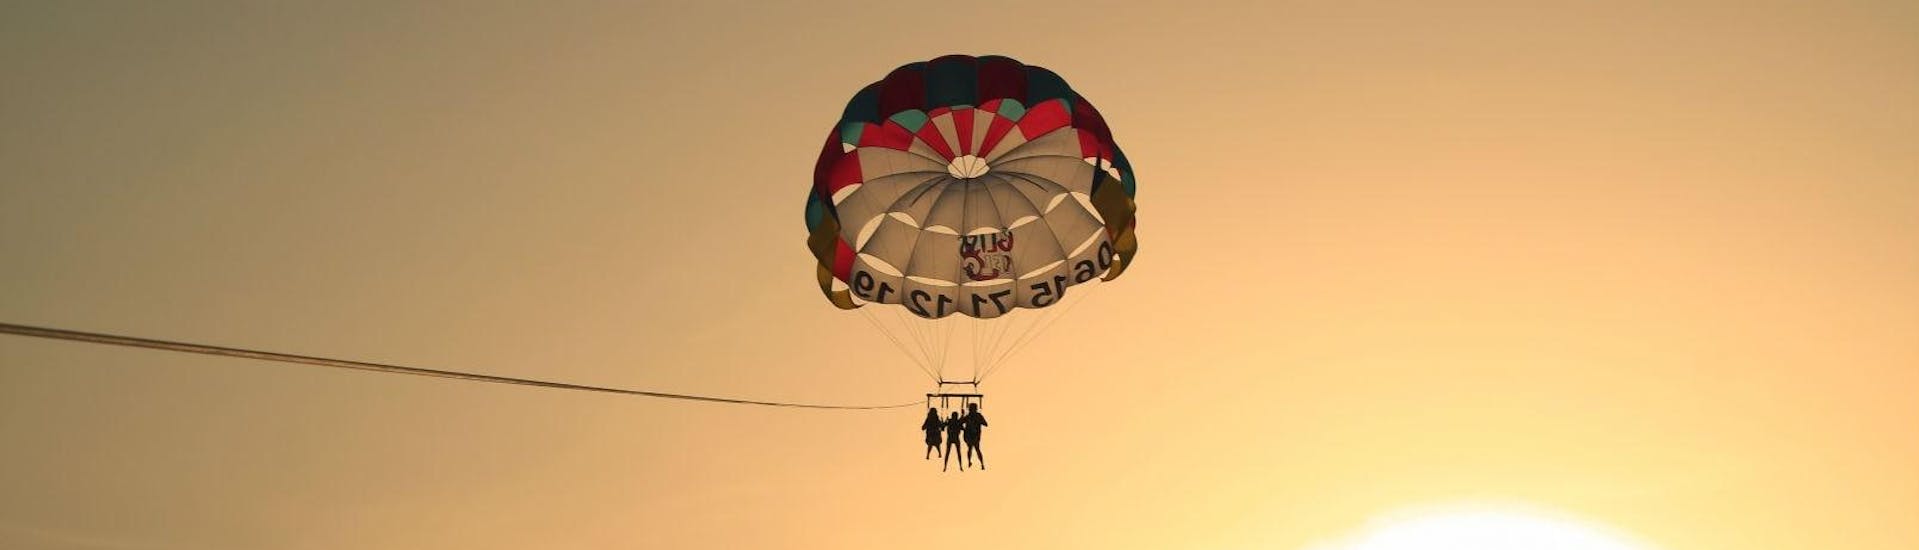 Parachute ascensionnel à Saint-Florent.